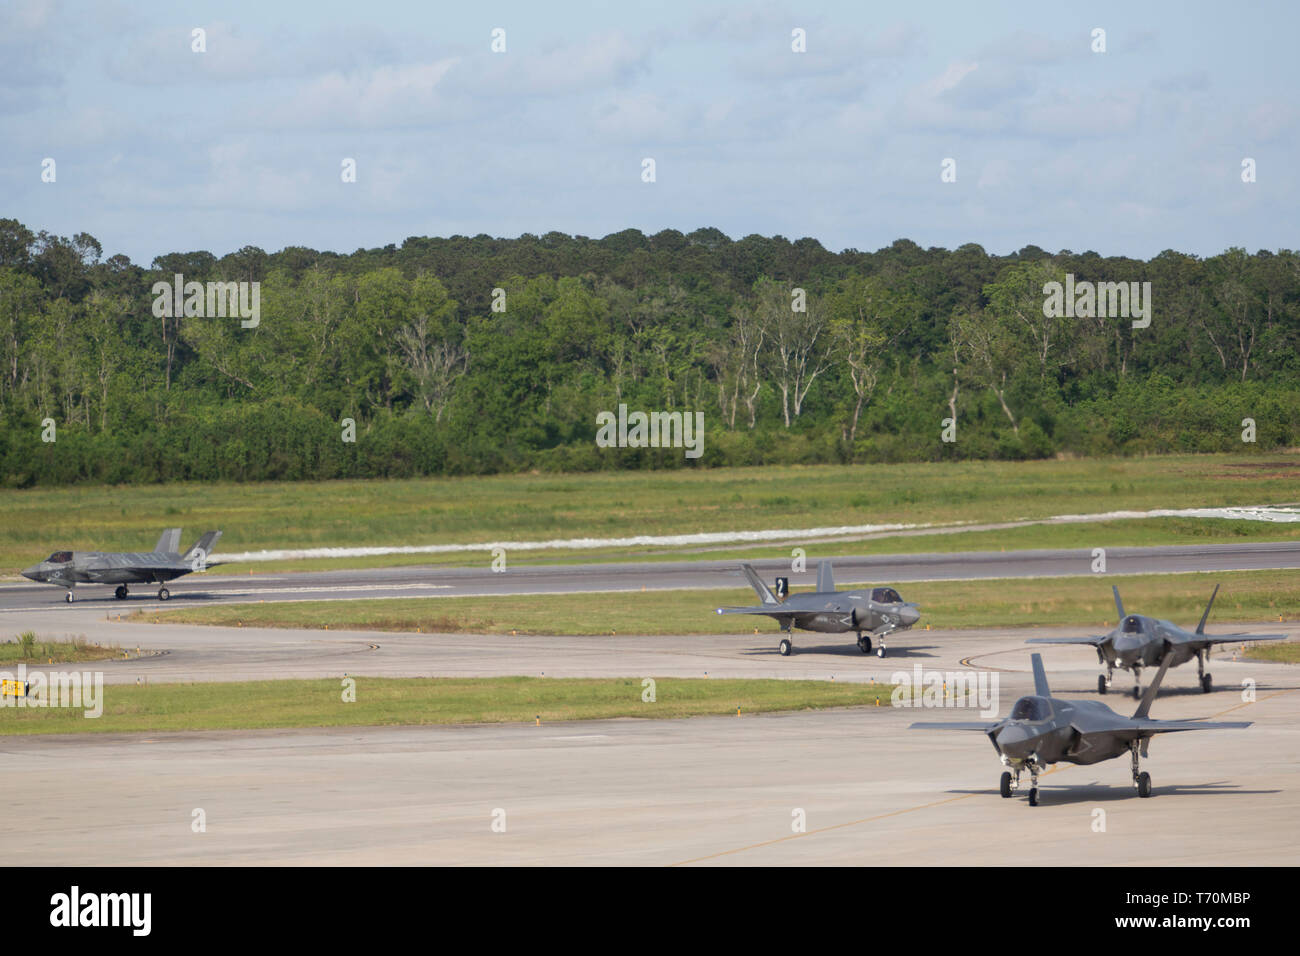 L'Escadron de chasse maritime Formation d'attaque (501) VMFAT mène un exercice de préparation composé de 20 F-35B Lightning II à bord d'aéronefs Marine Corps Air Station Beaufort, le 1 mai. La sécurité le lancement et la récupération de l'aéronef, l'escadron affirme son engagement à réaliser et maintenir le plus haut niveau de préparation afin de former la prochaine génération de pilotes de F-35B Le Corps des Marines américains et des pays partenaires. Banque D'Images